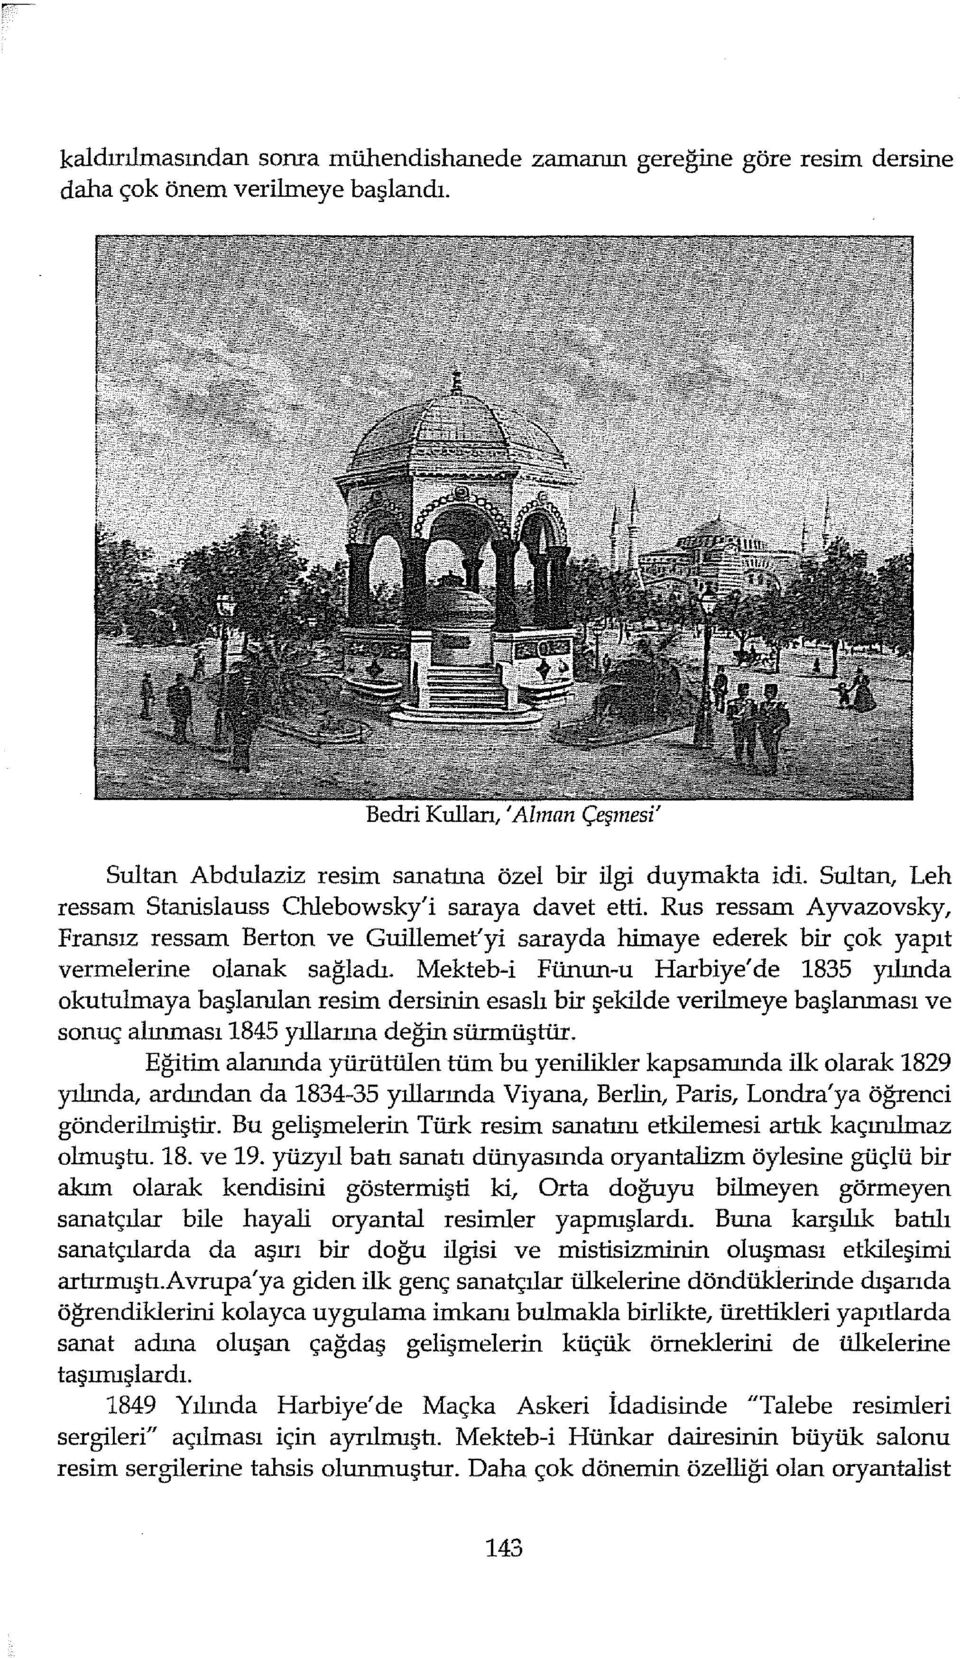 Mekteb-i Fünun-u Harbiye' de 1835 yılında okurulmaya başlanılan resim dersinin esaslı bir şekilde verilmeye başlanması ve sonuç alınması1845 yıllarına değin sürmüştür.